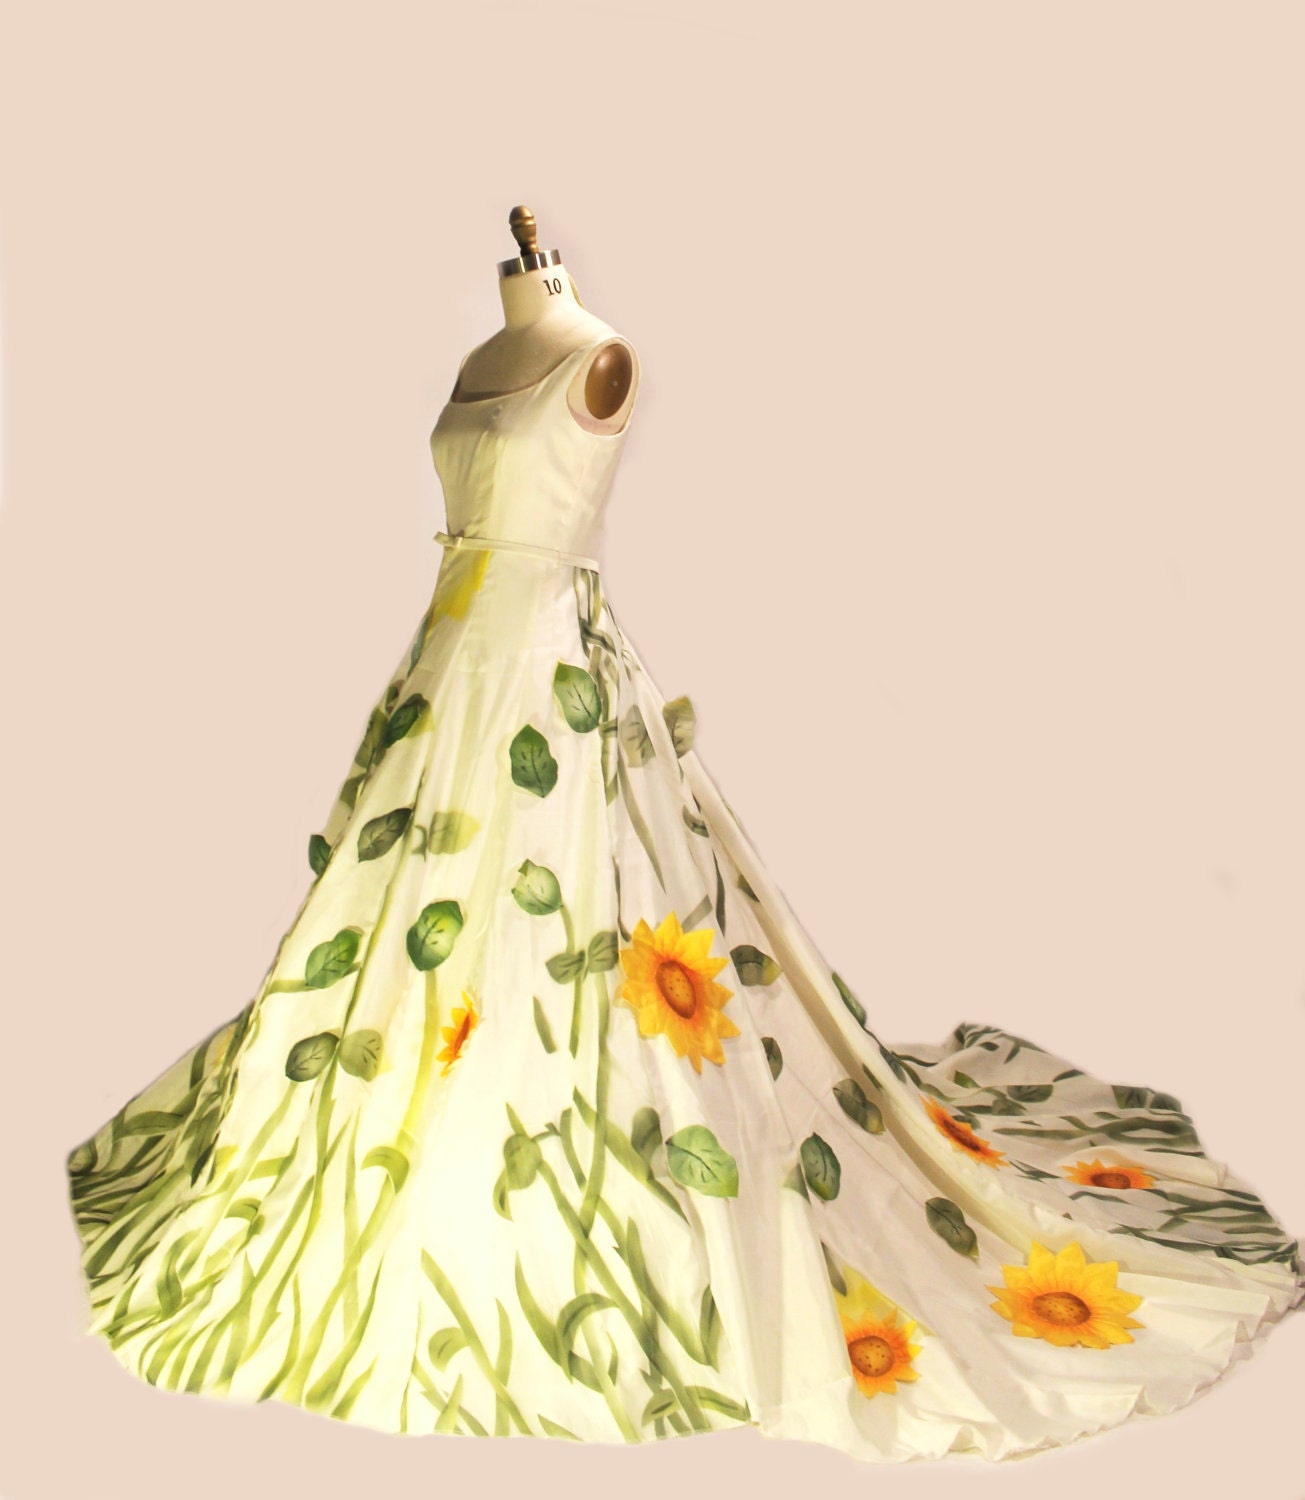 Romantic Bohemian Dress / Evening Gown / Wedding Dress / The Shower Curtain Dress